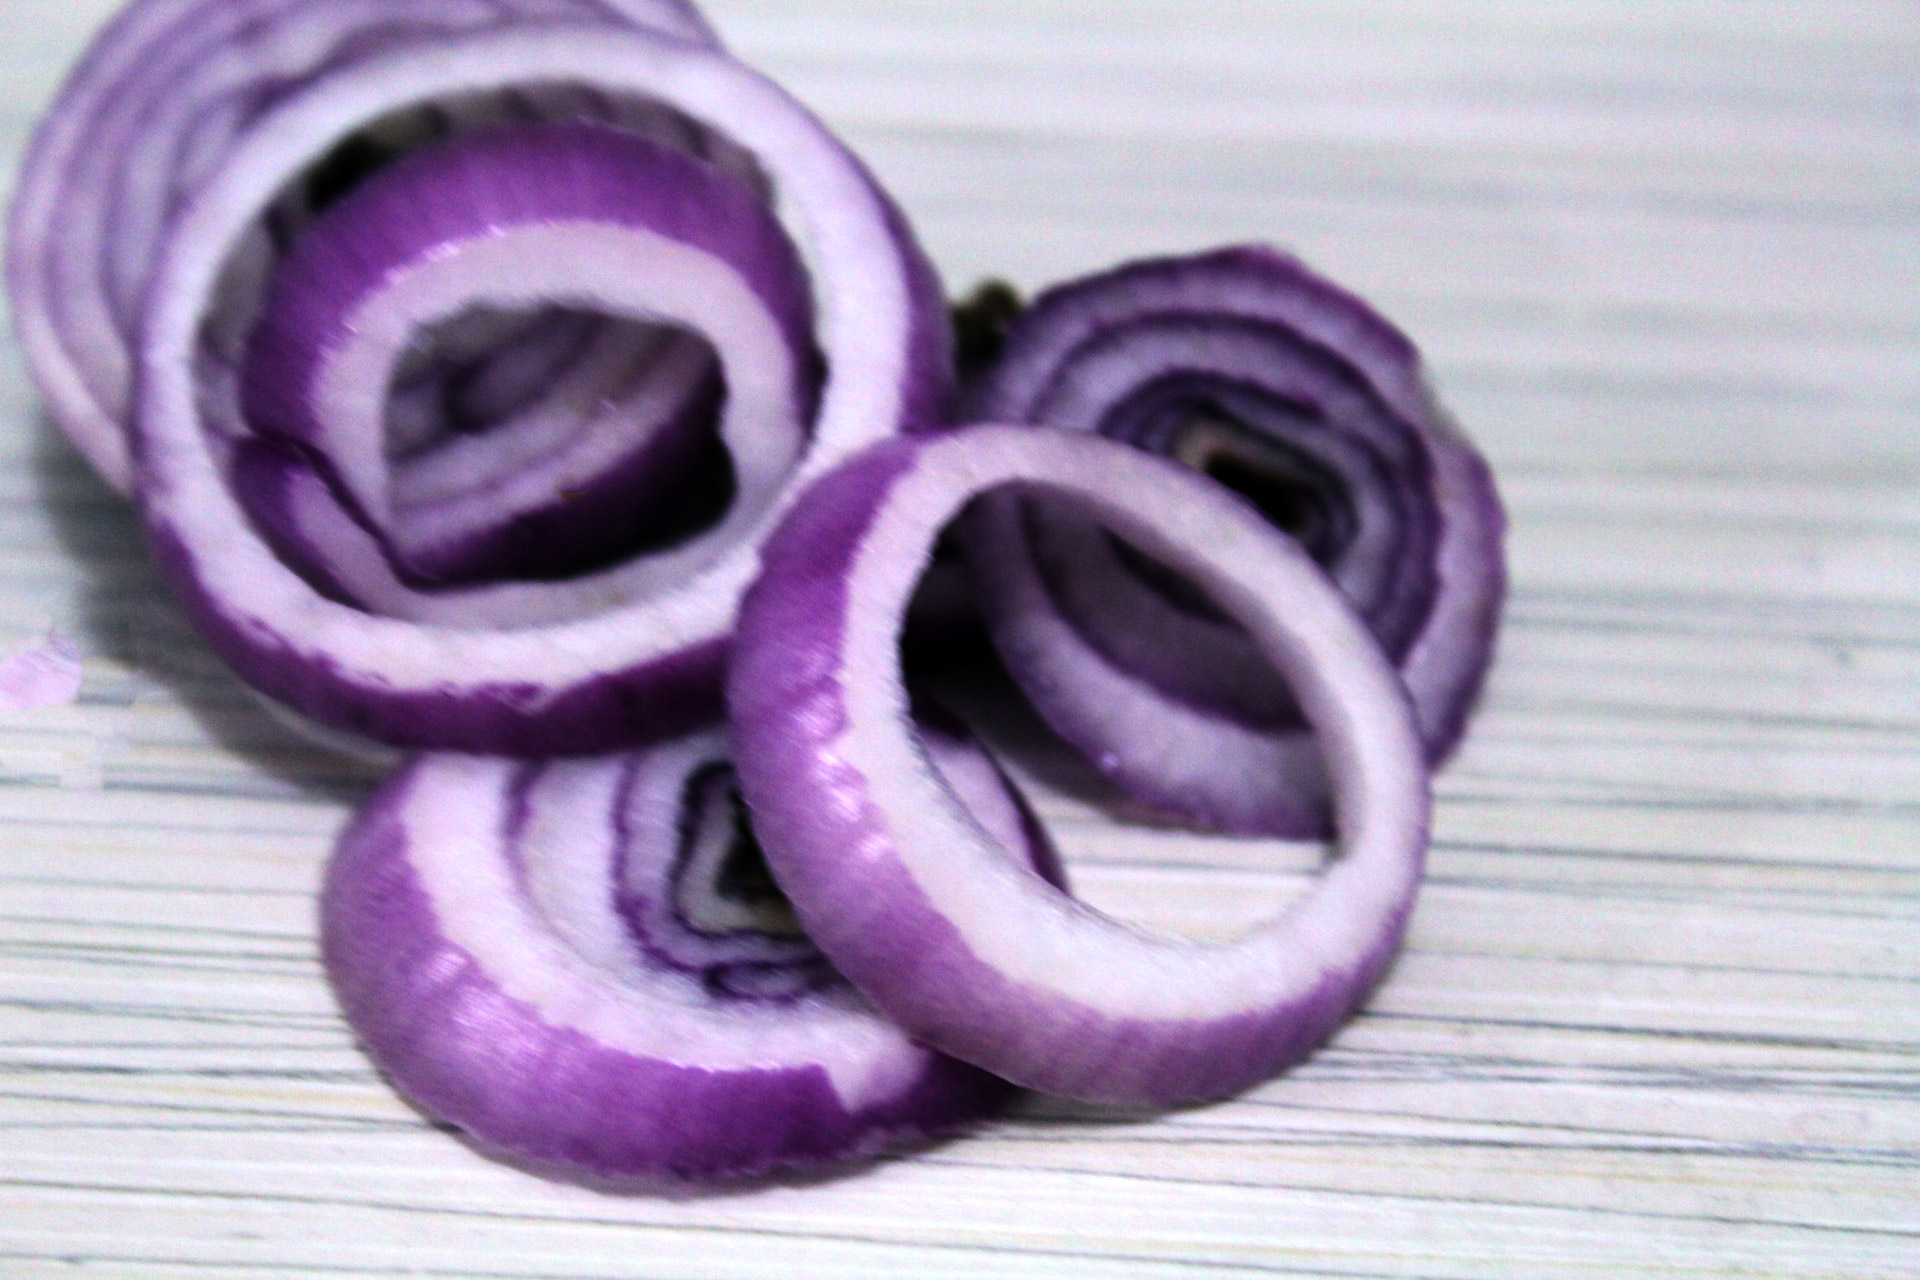 Pub-Style Onion Rings